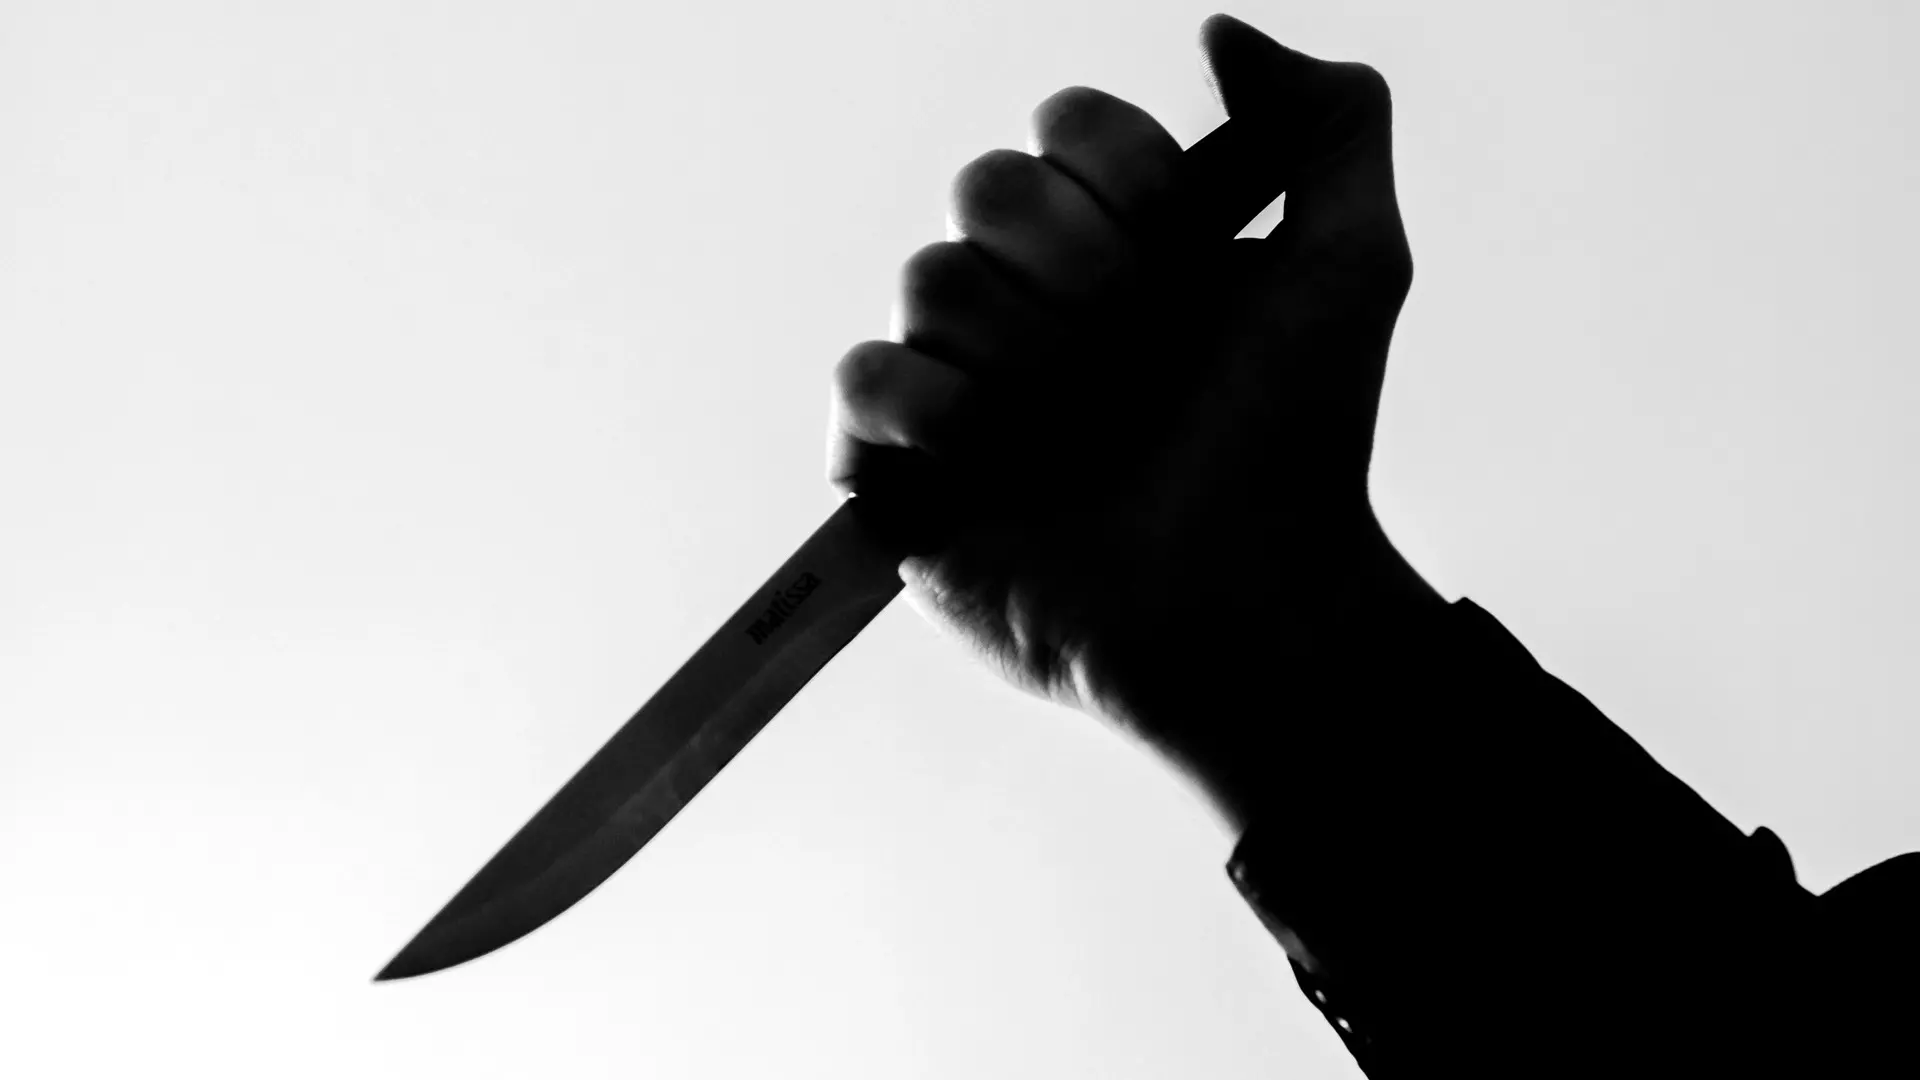 В Батайске мужчина нанес себе увечья ножом, снимая процесс на телефон